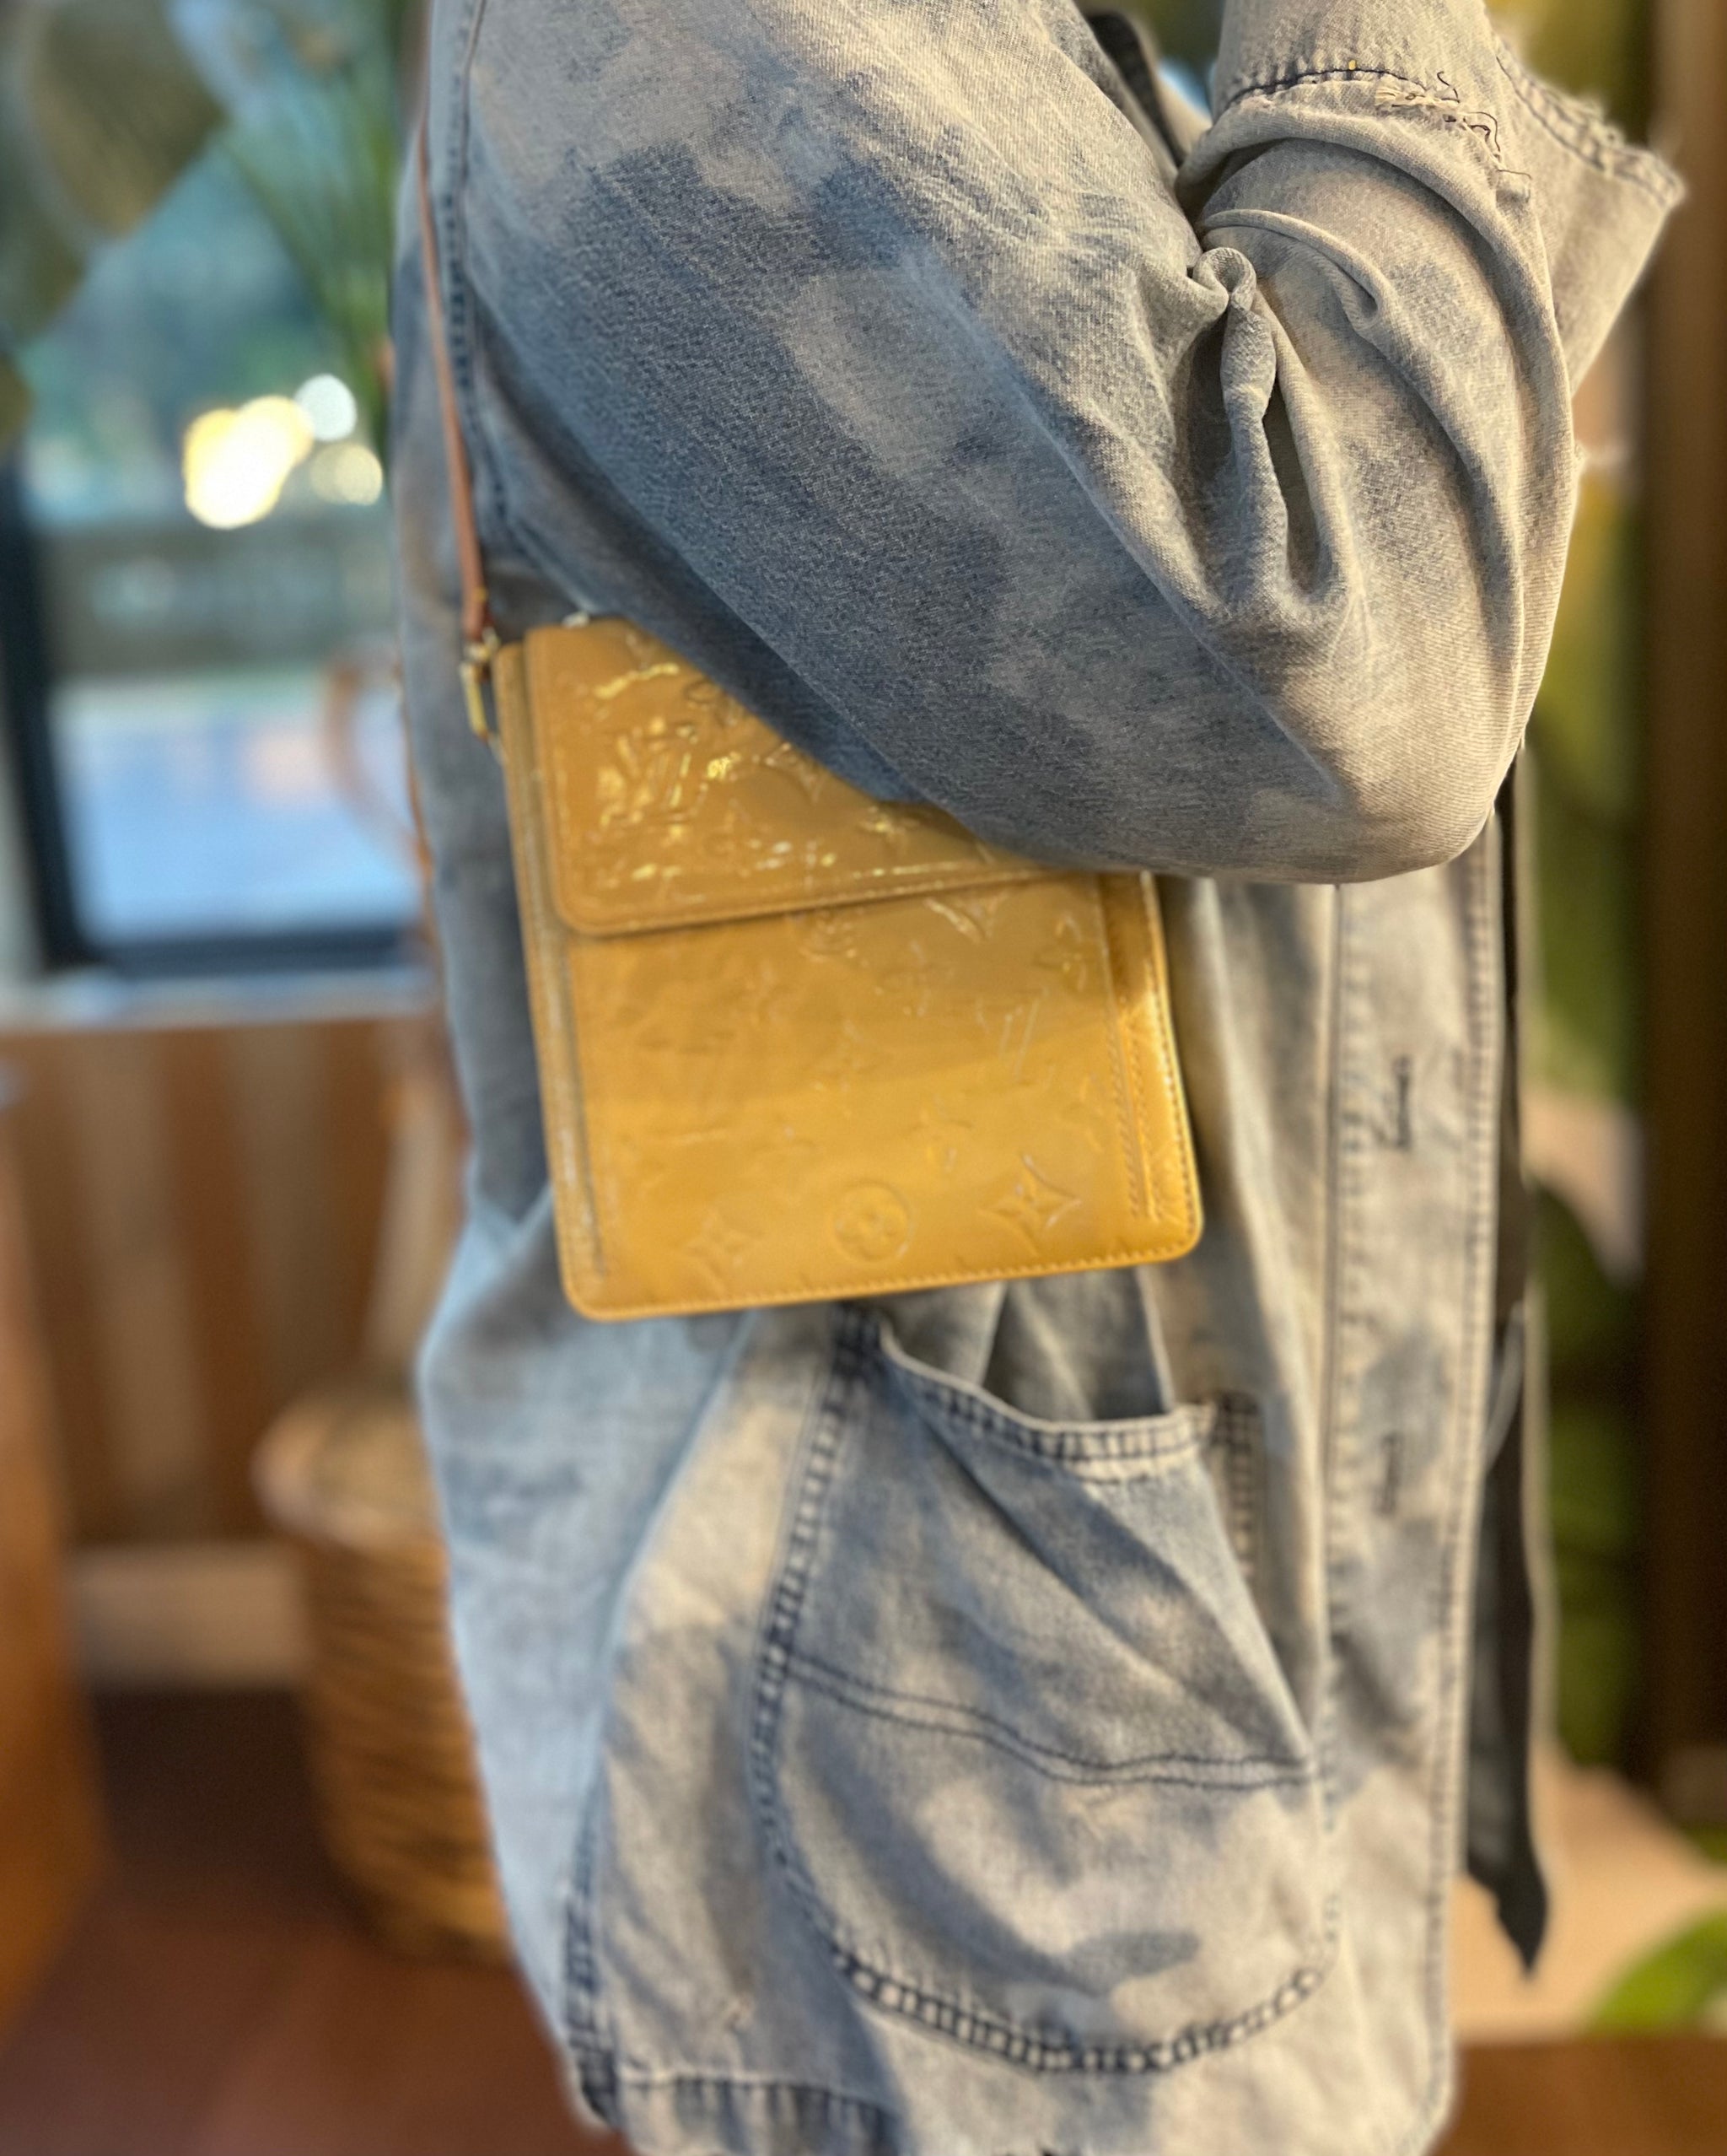 LOUIS VUITTON Yellow Vernis Mott Shoulder Bag - The Purse Ladies